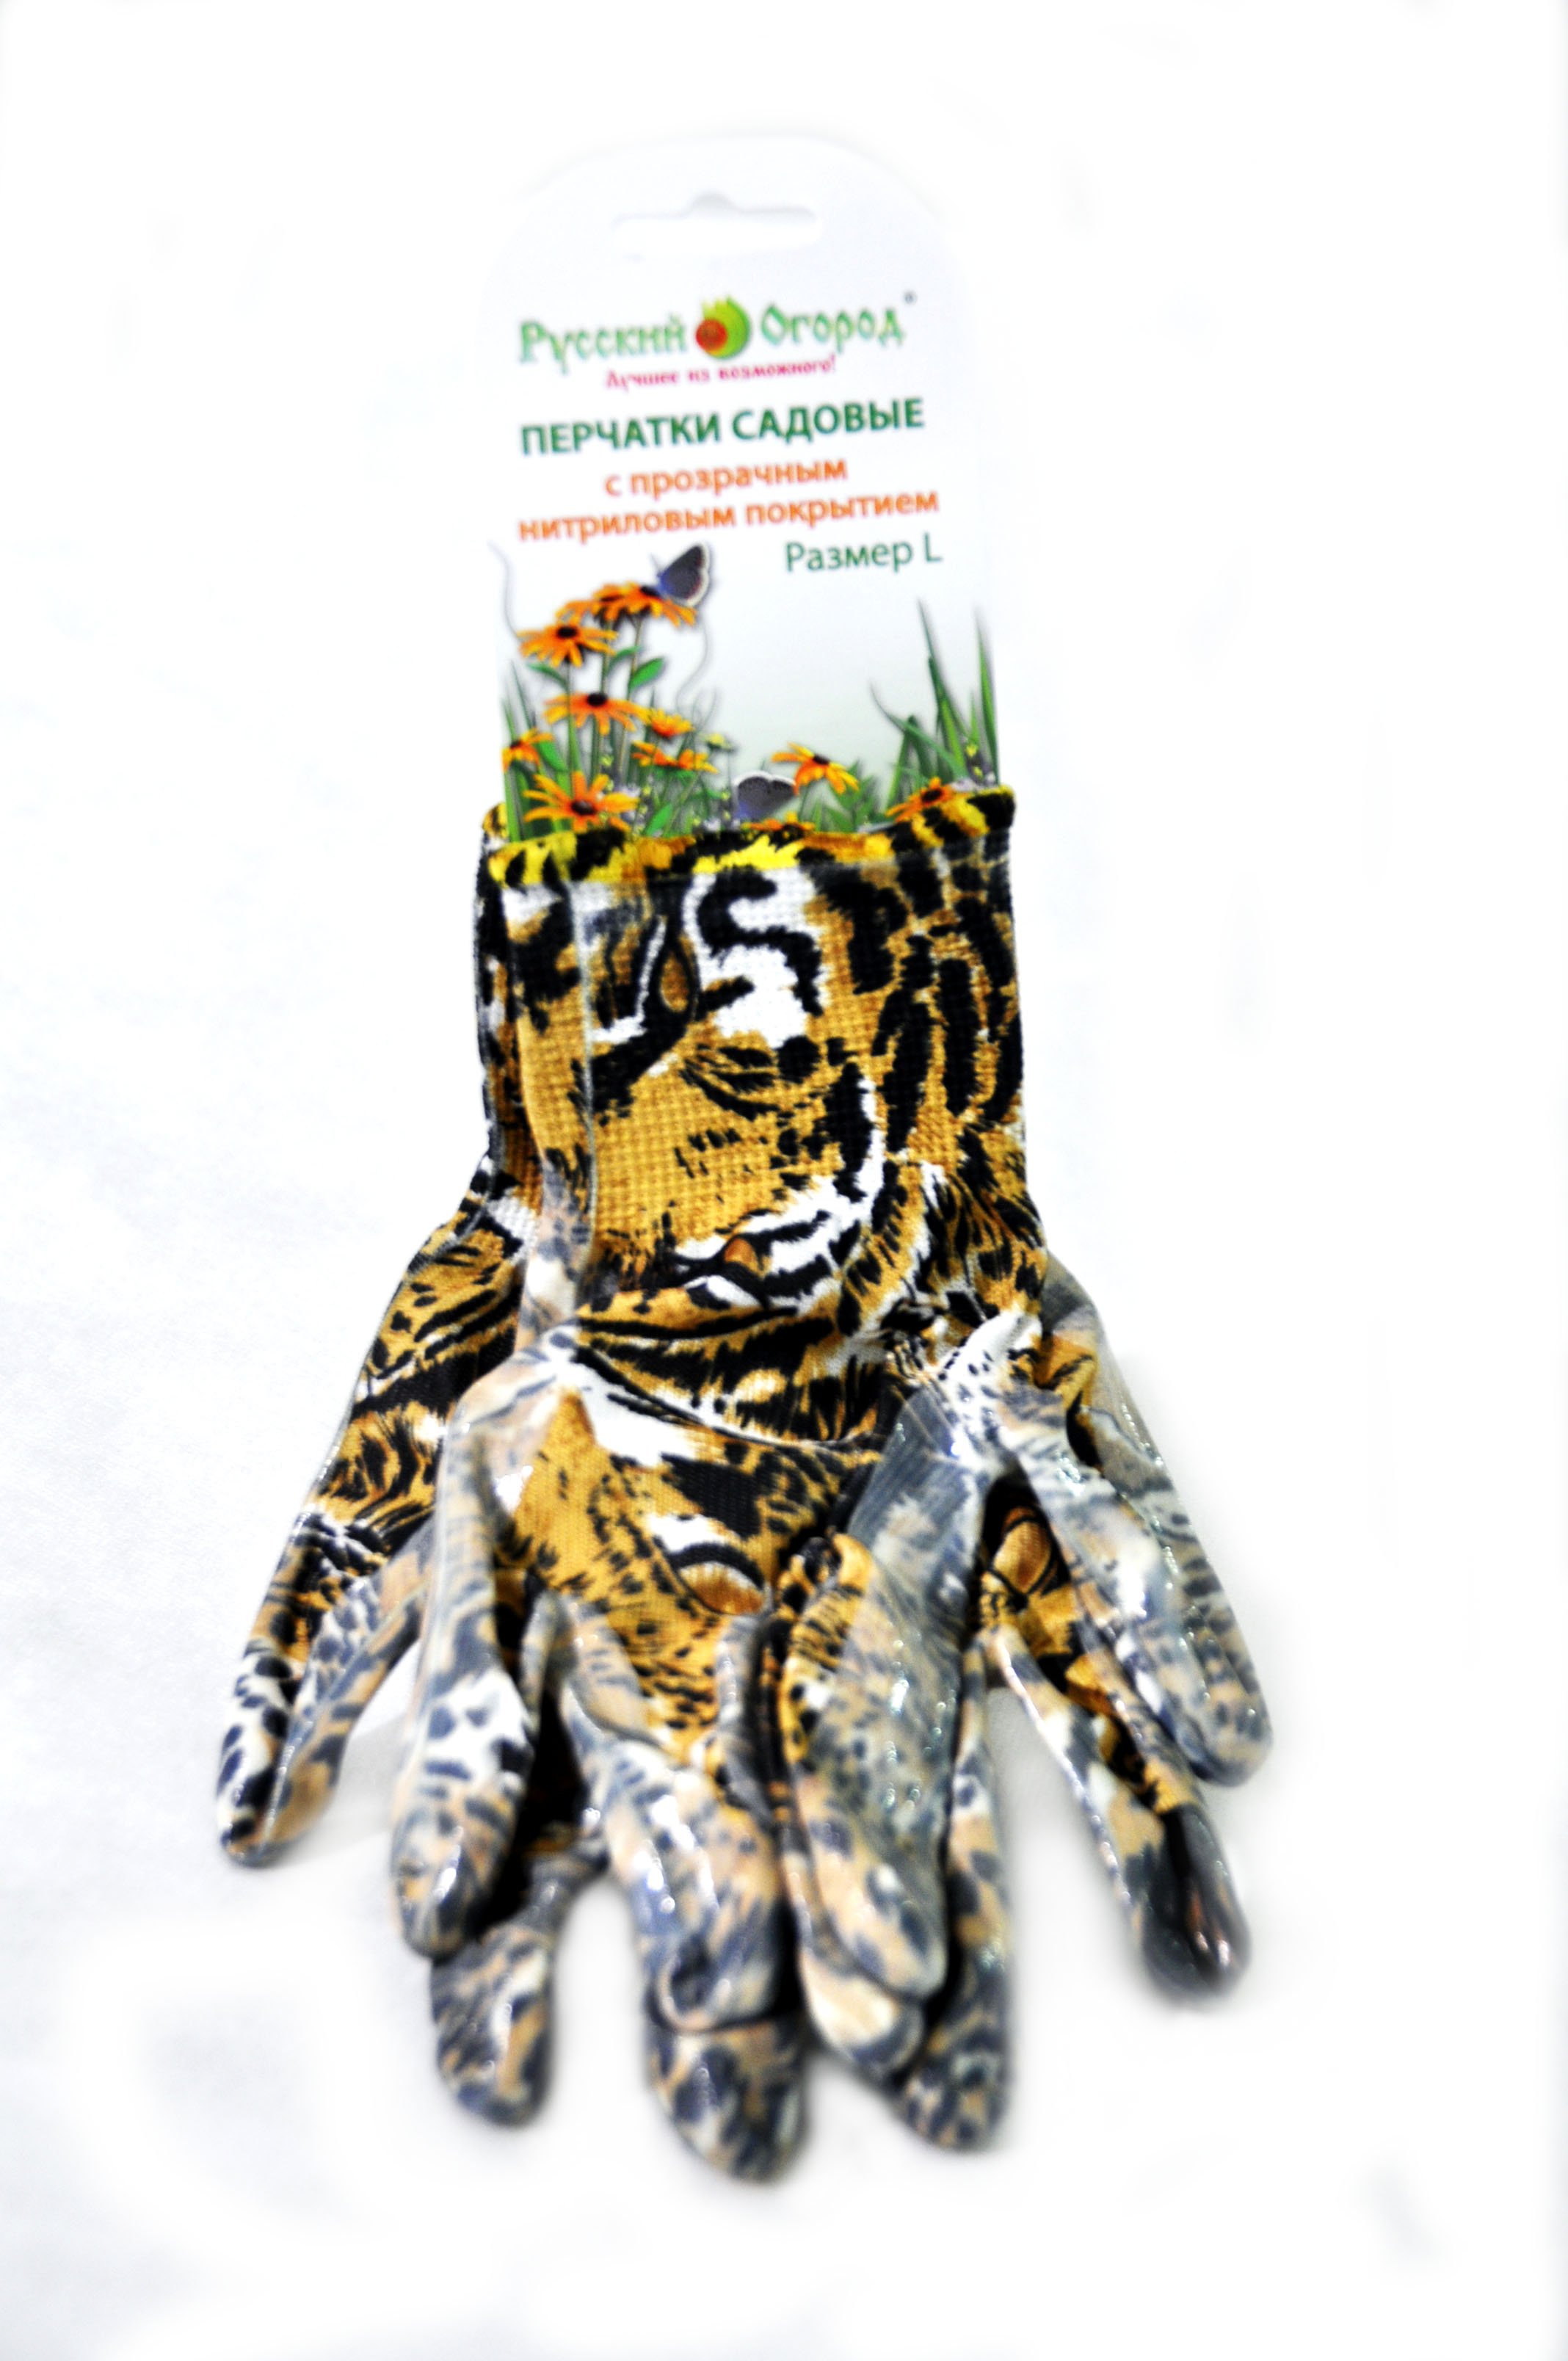 Перчатки Русский Огород нейлоновые с нитриловым покрытием леопардовые, размер S